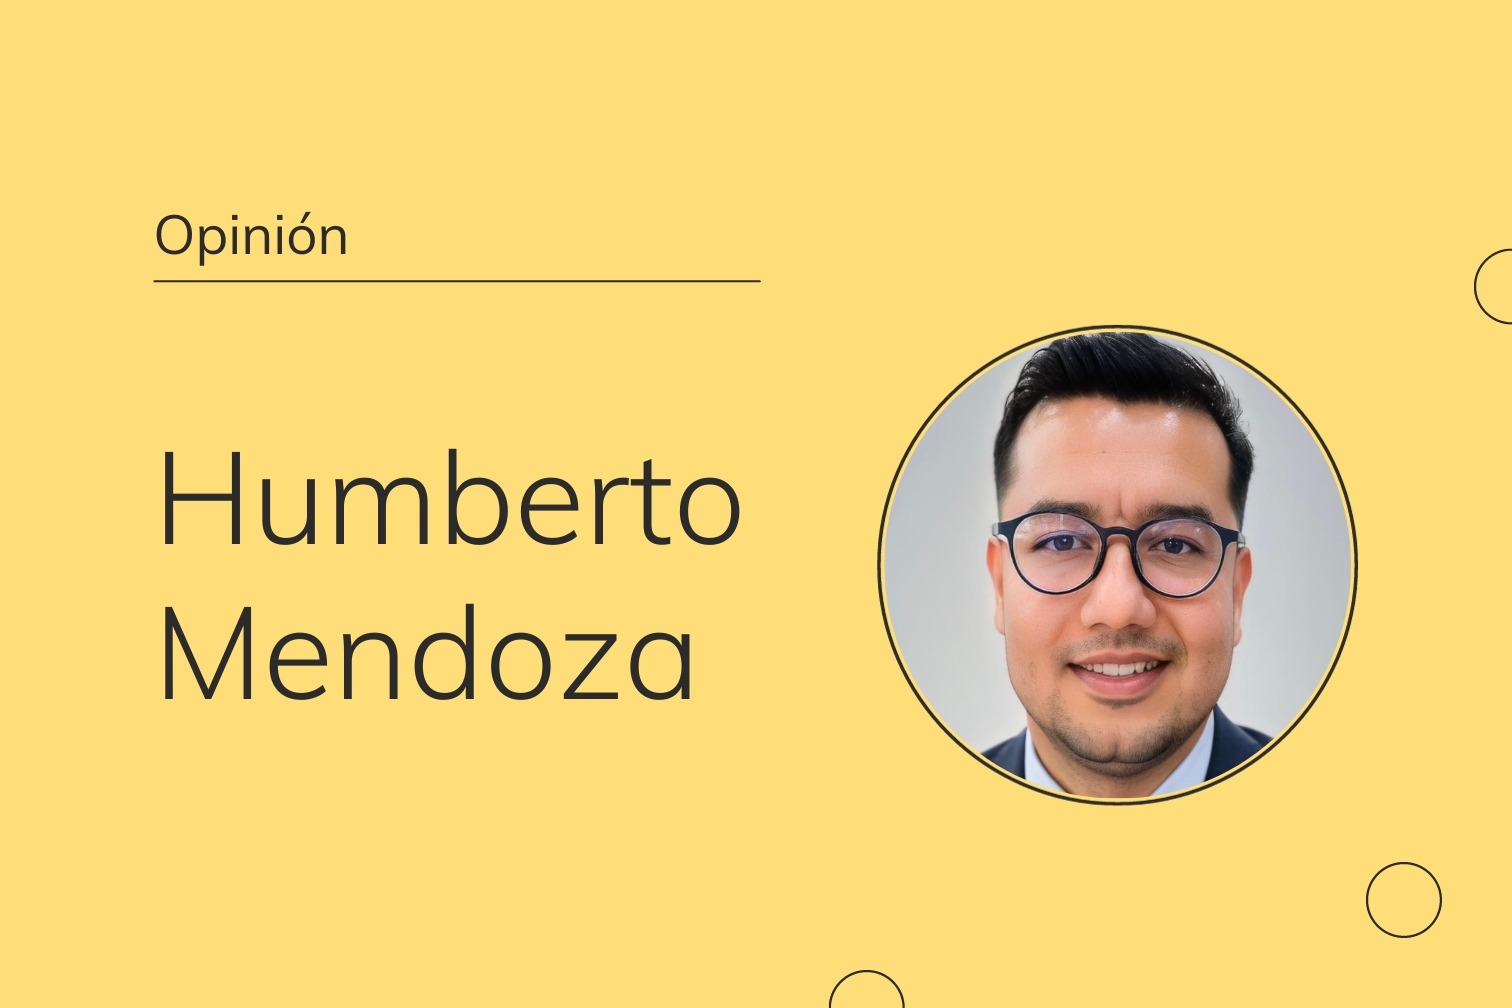 Humberto Mendoza es un profesional comprometido en el campo del diseño y evaluación de políticas públicas en Jalisco. Es licenciado en Administración Gubernamental y Políticas Públicas Locales por la Universidad de Guadalajara con un Máster en Antropología en la Universitat Autònoma de Barcelona.